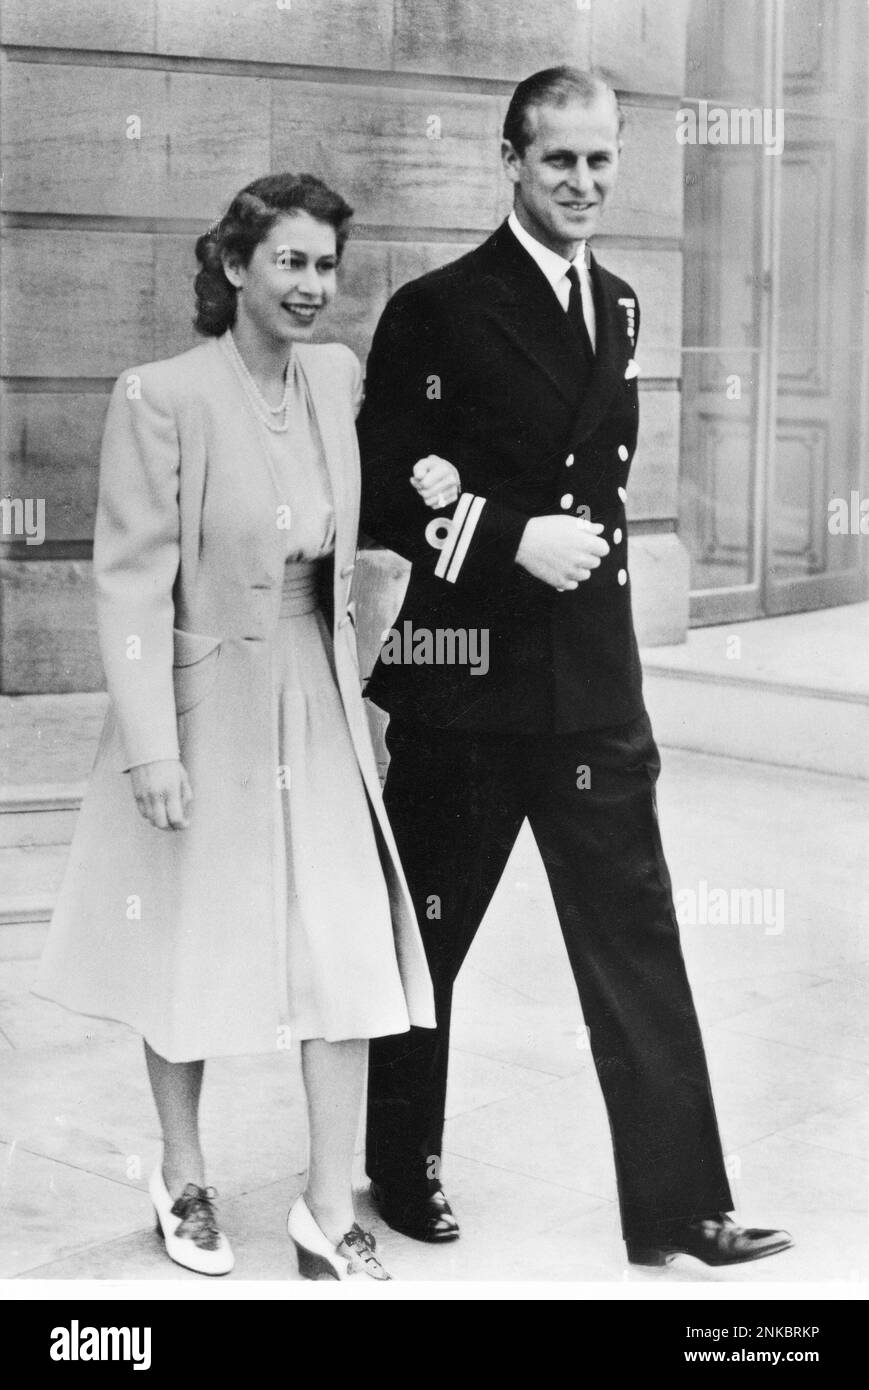 1947 ca : la futura Regina ELISABETTA II d'INGHILTERRA ( data di nascita 21 aprile 1926 ) con il futuro tenente PHILIP MOUNTBATTEN ( 10 giugno 1921 ) Duca di Edimburgo e Principe di Grecia ana Danimarca - REALI - ROYALTY - nobili - nobiltà - nobiltà - GRAND BRETAGNA - INGHILTERRA - REGINA - WINDSOR - collana - collera - gioviello - gioielli - perle - perla - perla - sorriso - sorriso - sorriso - FIDANZATI - Innamorati - IL REALE BETROTHAL - uniforme militare - uniforme divisa militare della marina ---- Archivio GBB Foto Stock